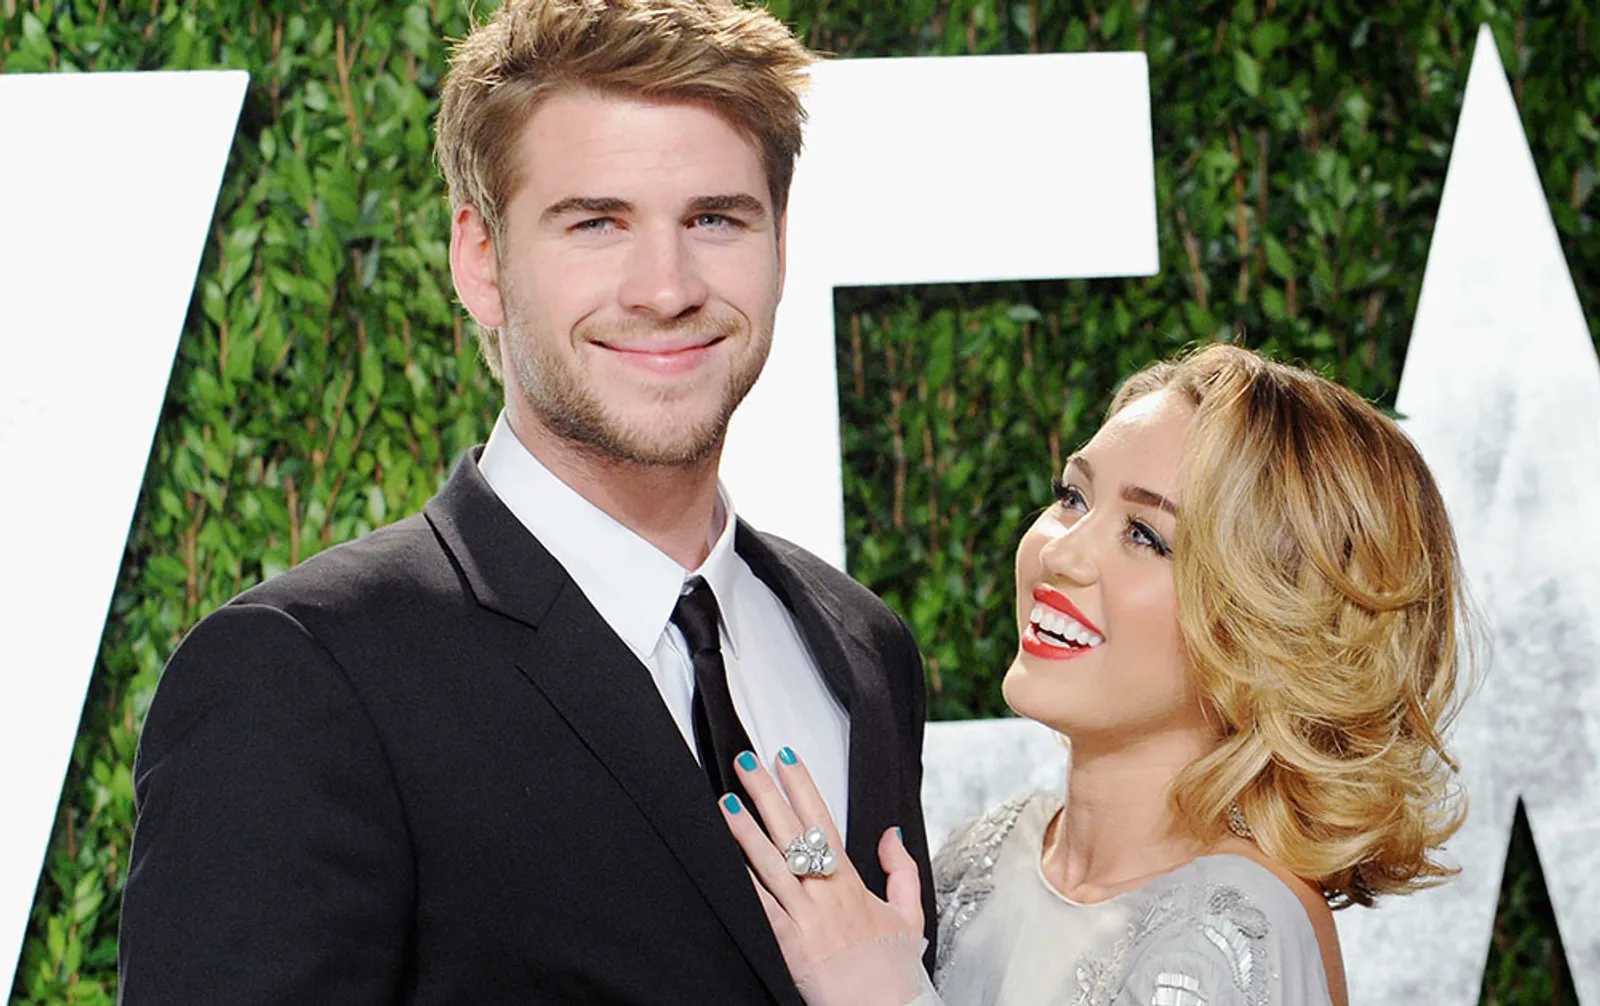 Liam Hemsworth Minta Miley Cyrus Hapus Tato, Inilah yang Harus Dilakukan Ketika Pacar Ingin Kamu Berubah